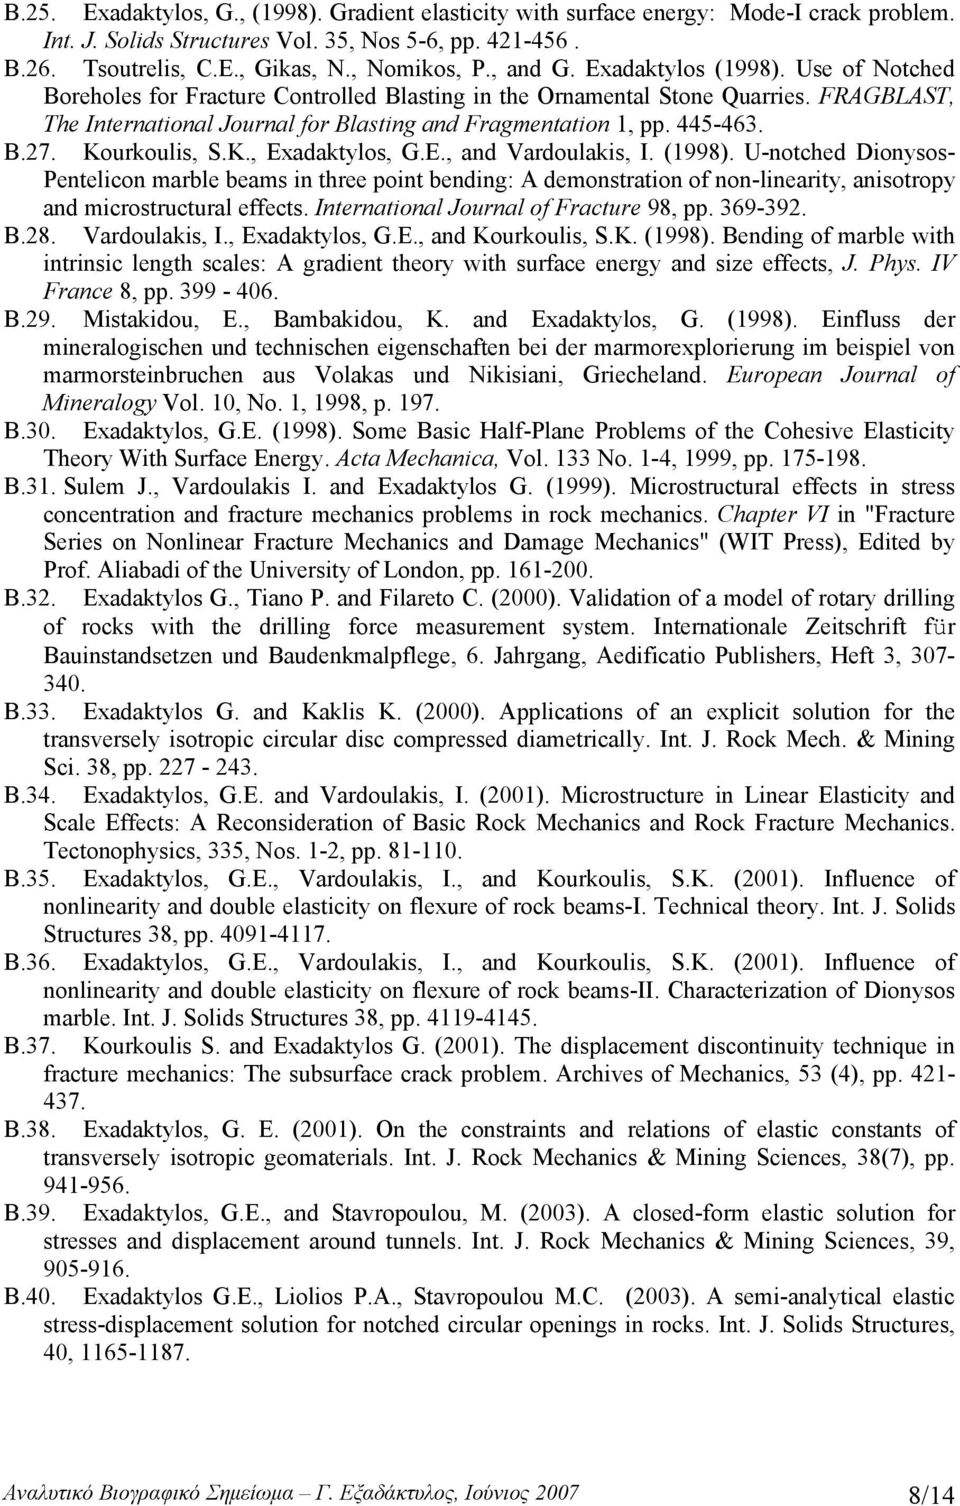 445-463. Β.27. Kourkoulis, S.K., Exadaktylos, G.E., and Vardoulakis, I. (1998).